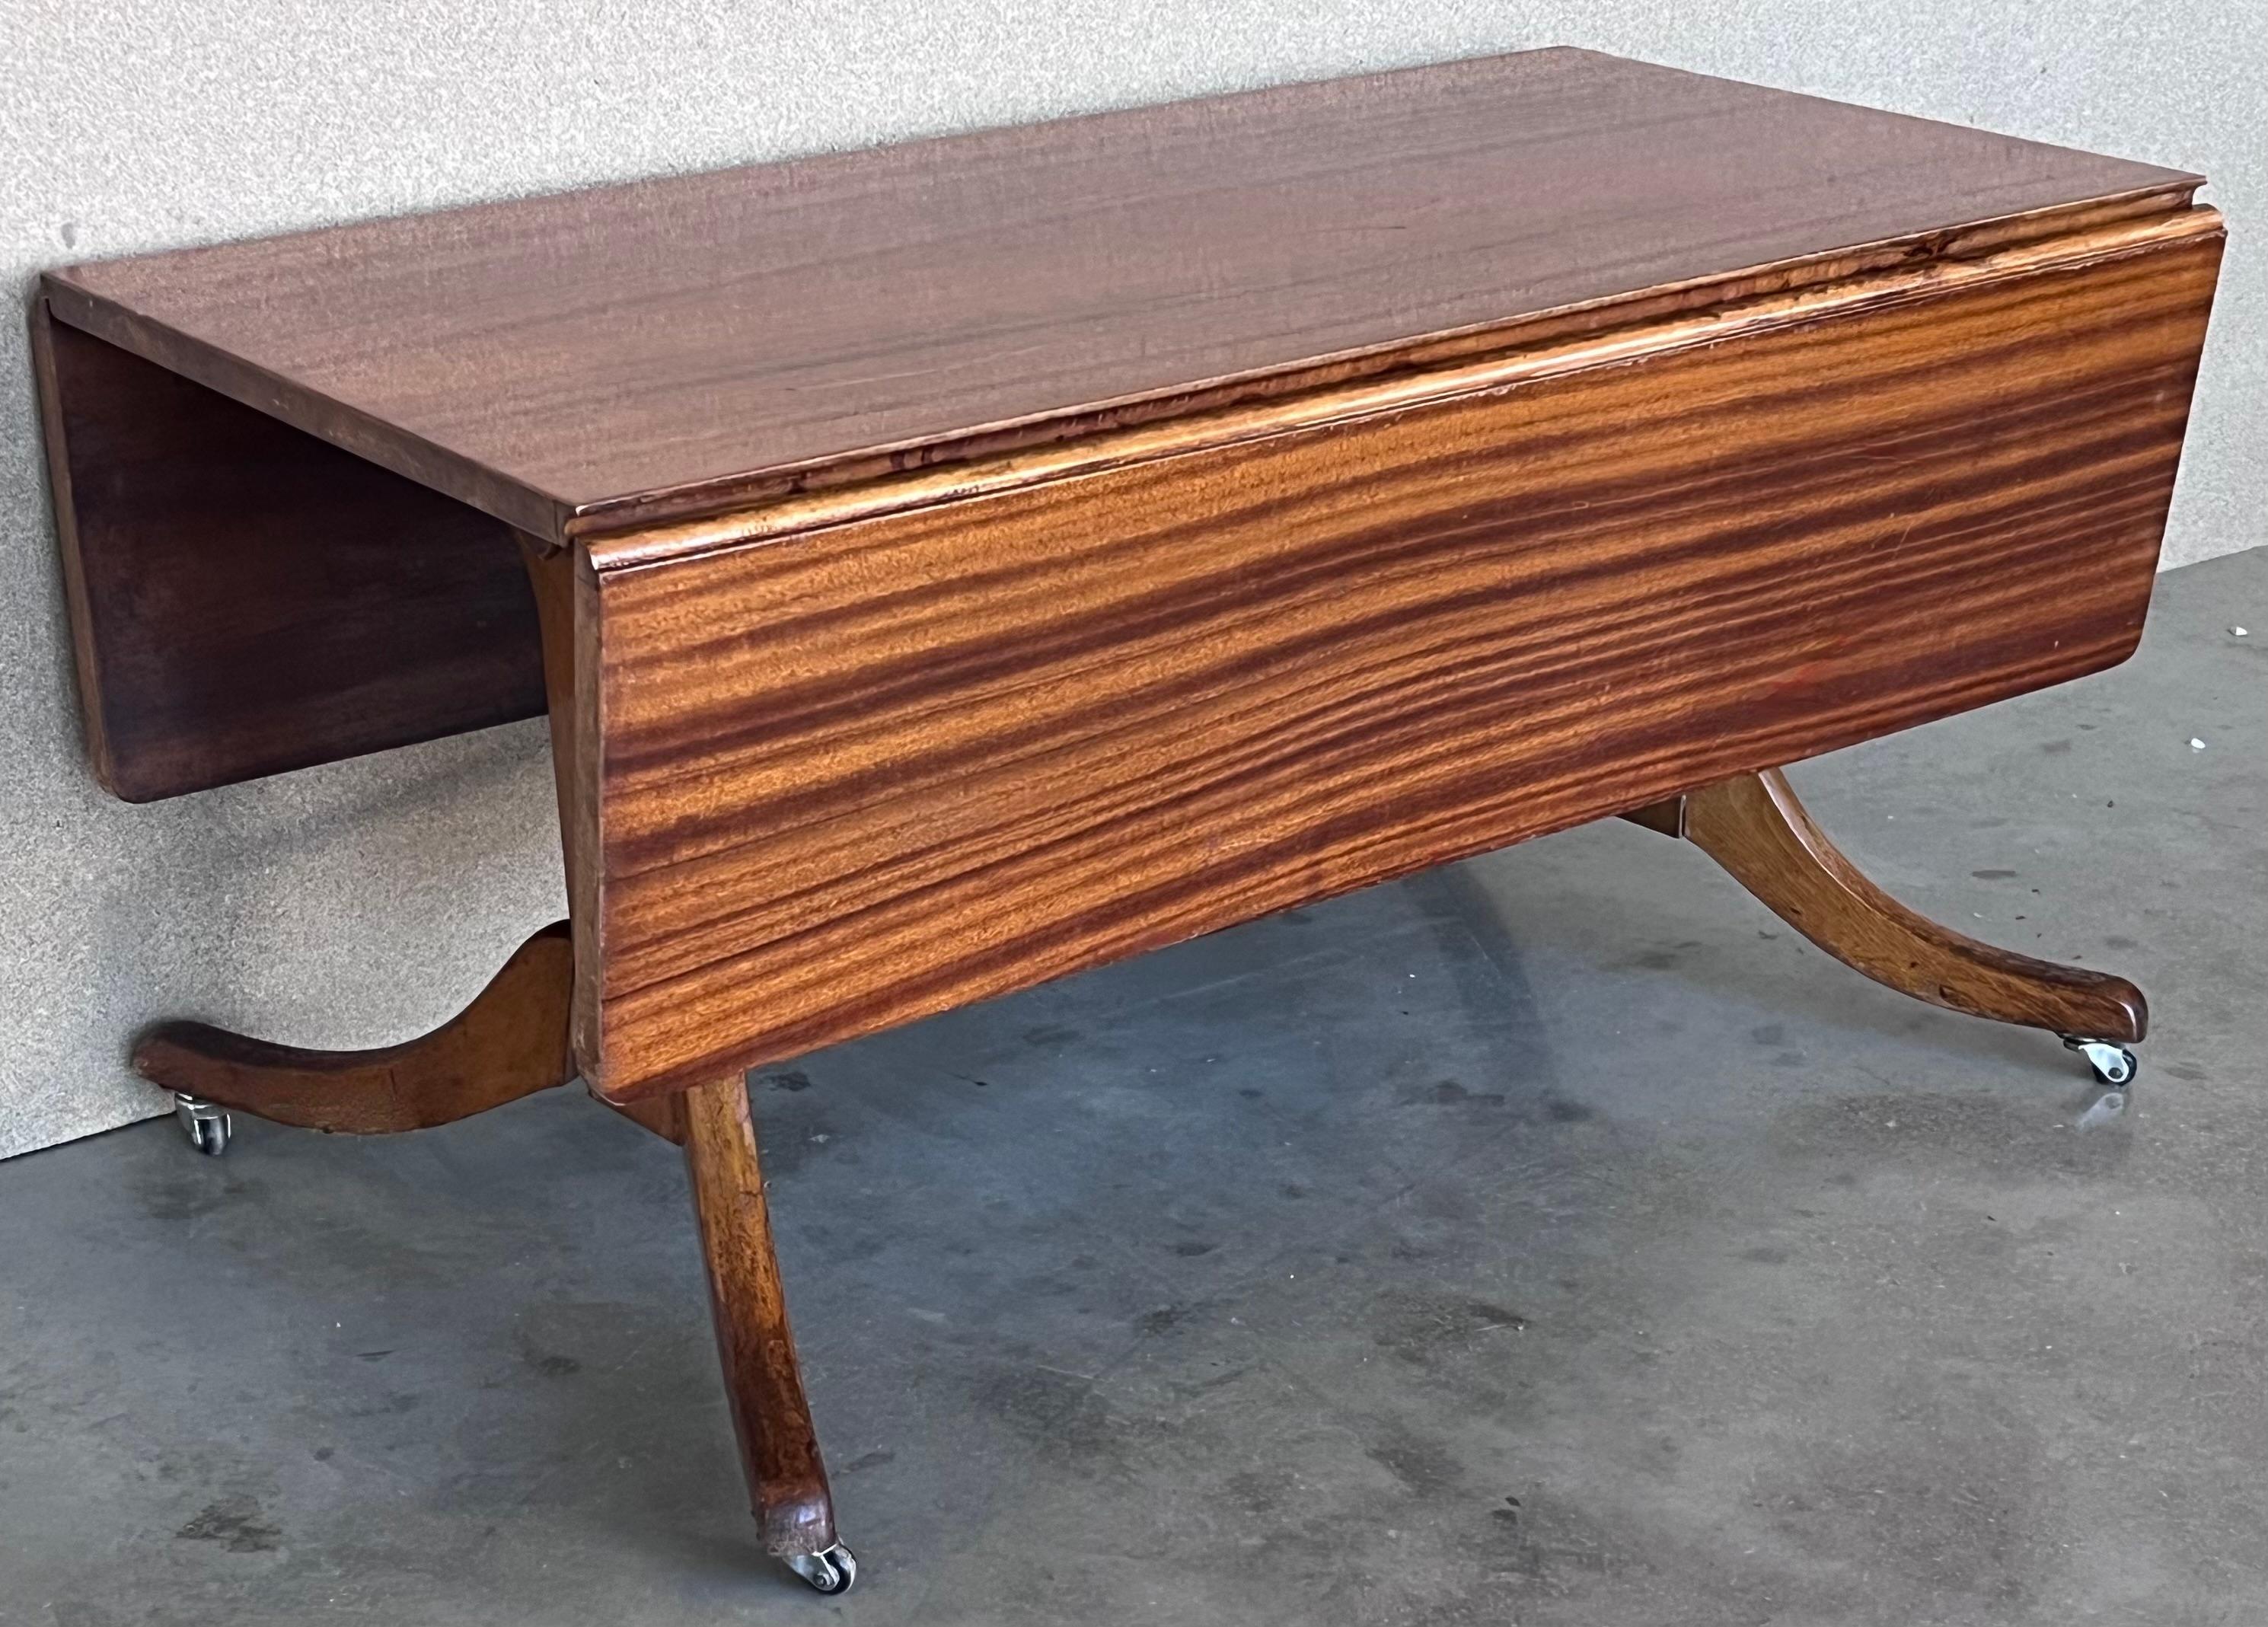 Mid Century Modern Convertible Liftable Coffee Dining Table mit faltbaren Flügeln. 

Sie können den Tisch als Couchtisch oder als Esszimmertisch verwenden. Der Tisch verfügt über einen modernen, patentierten Mechanismus aus dieser Zeit, der es